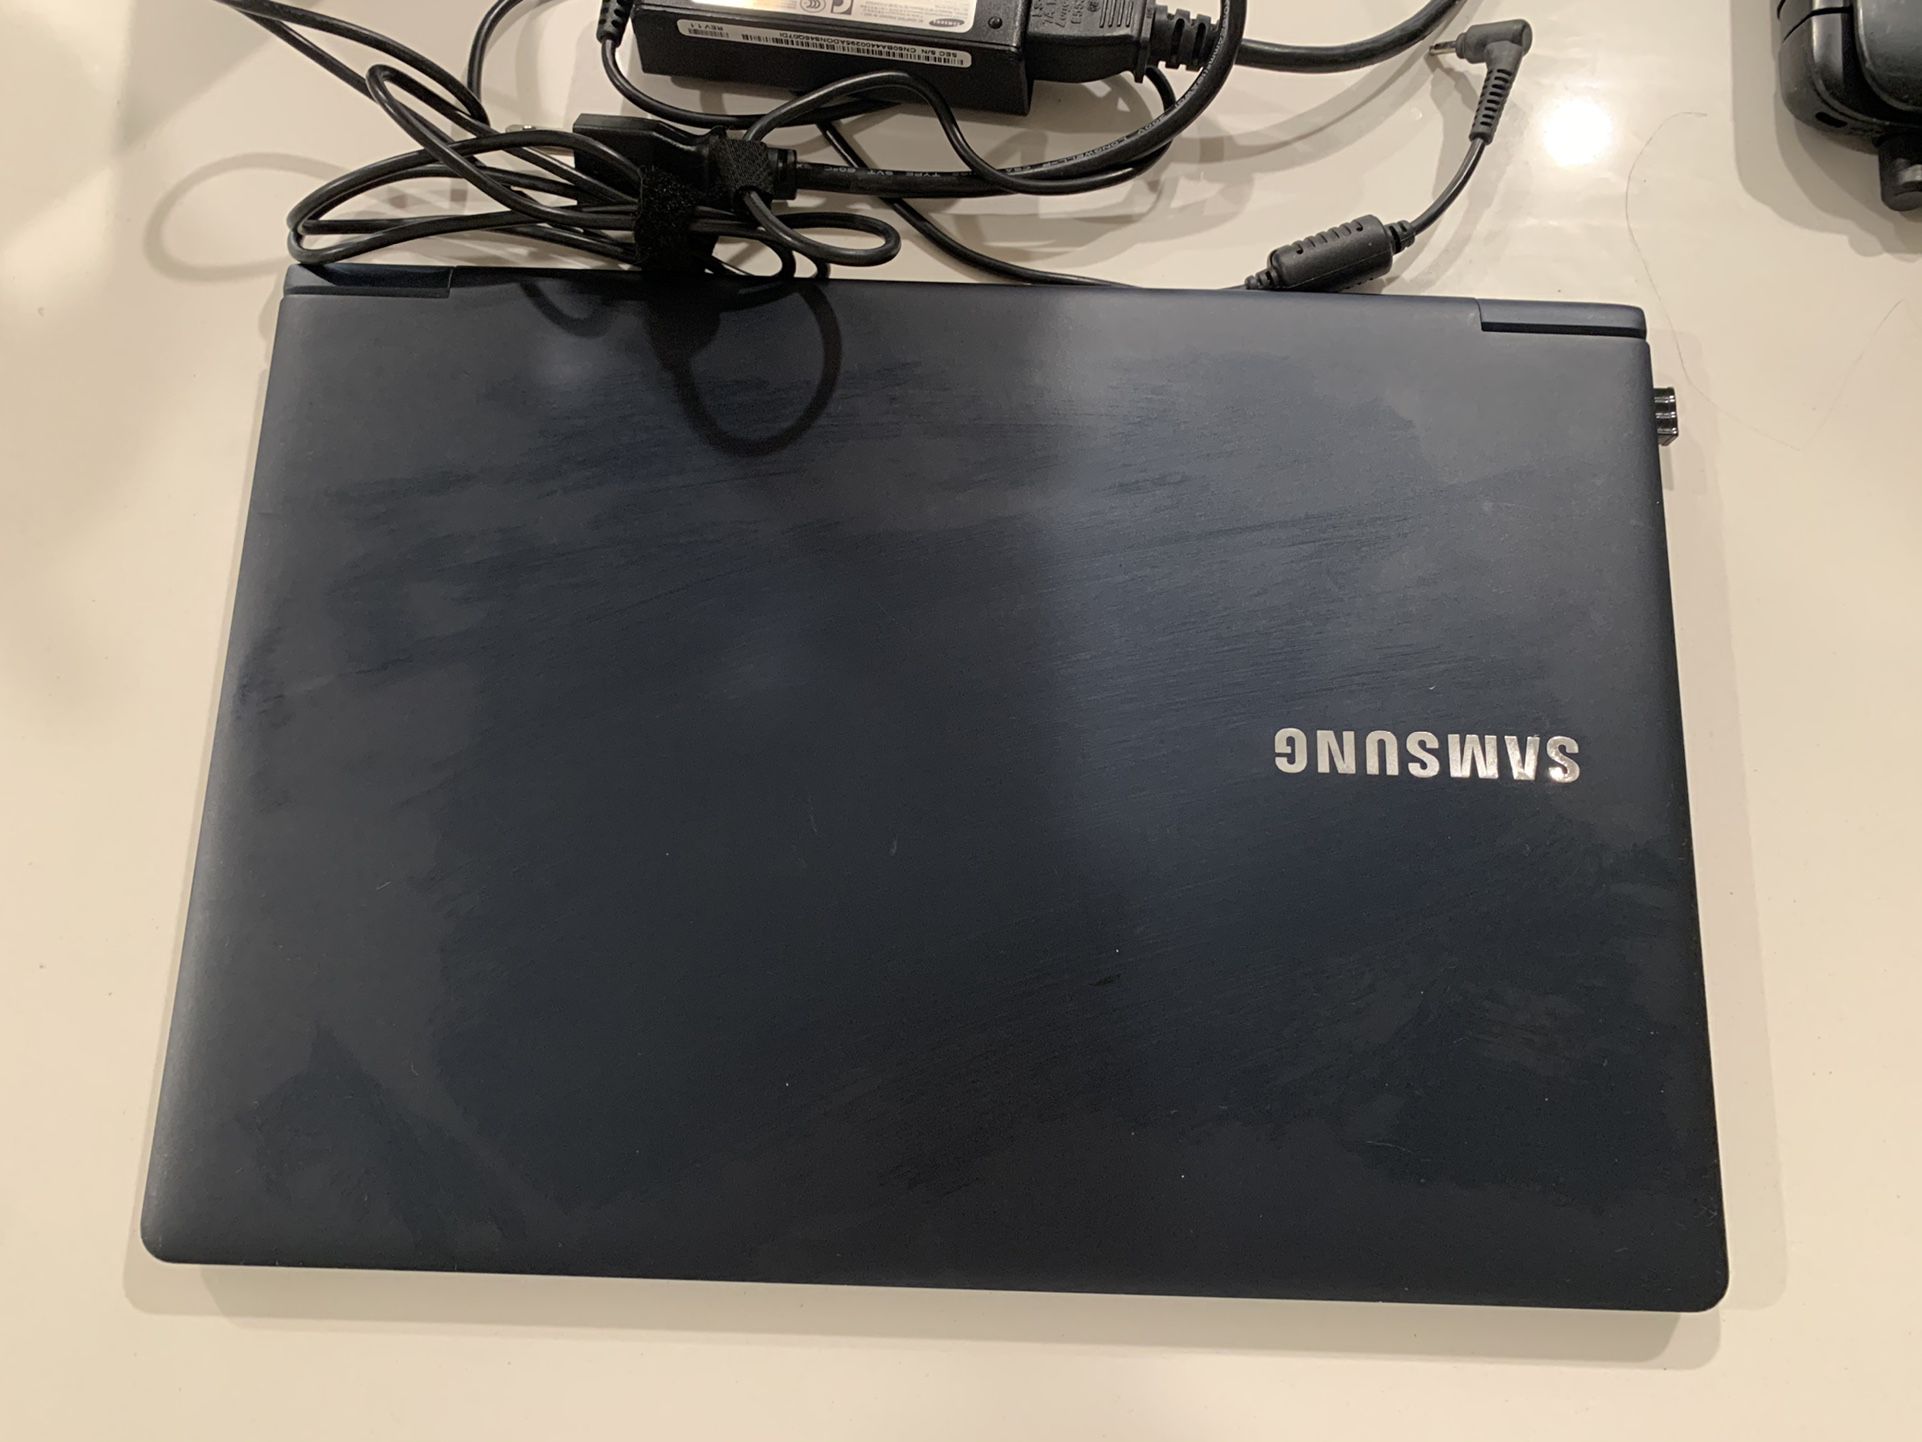 12 Inch Samsung Laptop